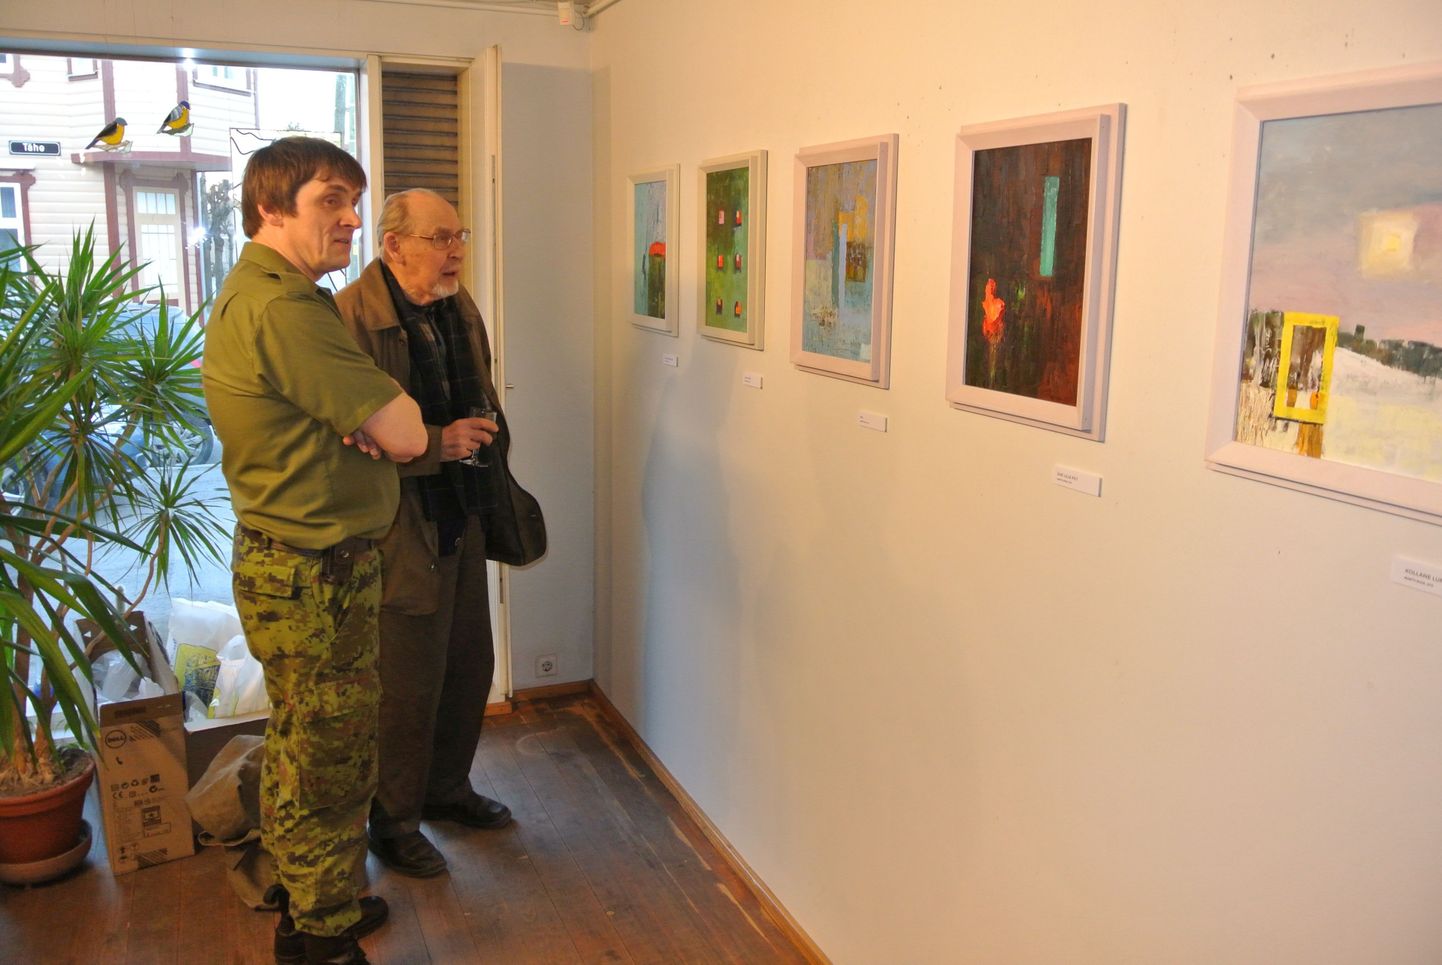 Kaitseliitlase vormis kunstnik Martti Ruus tutvustas näituse avamisel väljapandud pilte oma maaliõpetajale Heldur Viiresele. Nende ees on maalid «Katus sõidab» (vasakult), «Kuus teist», «Kiil», «Ühe lille pilt» ja «Kollane lumi».